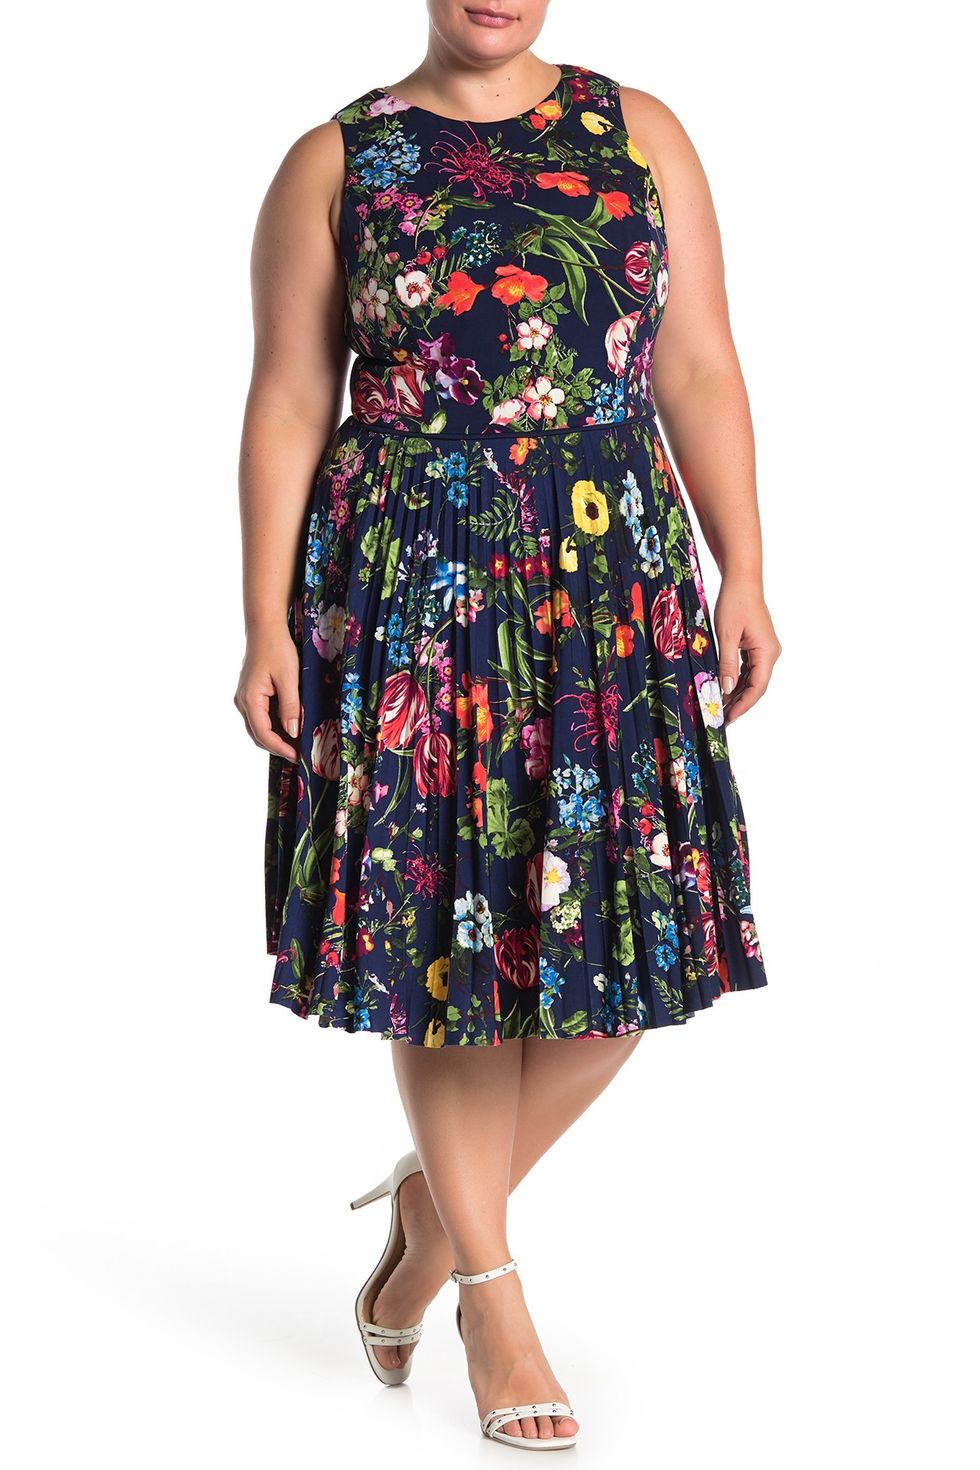 17 Best Slimming Dresses - Affordable Slimming Dresses